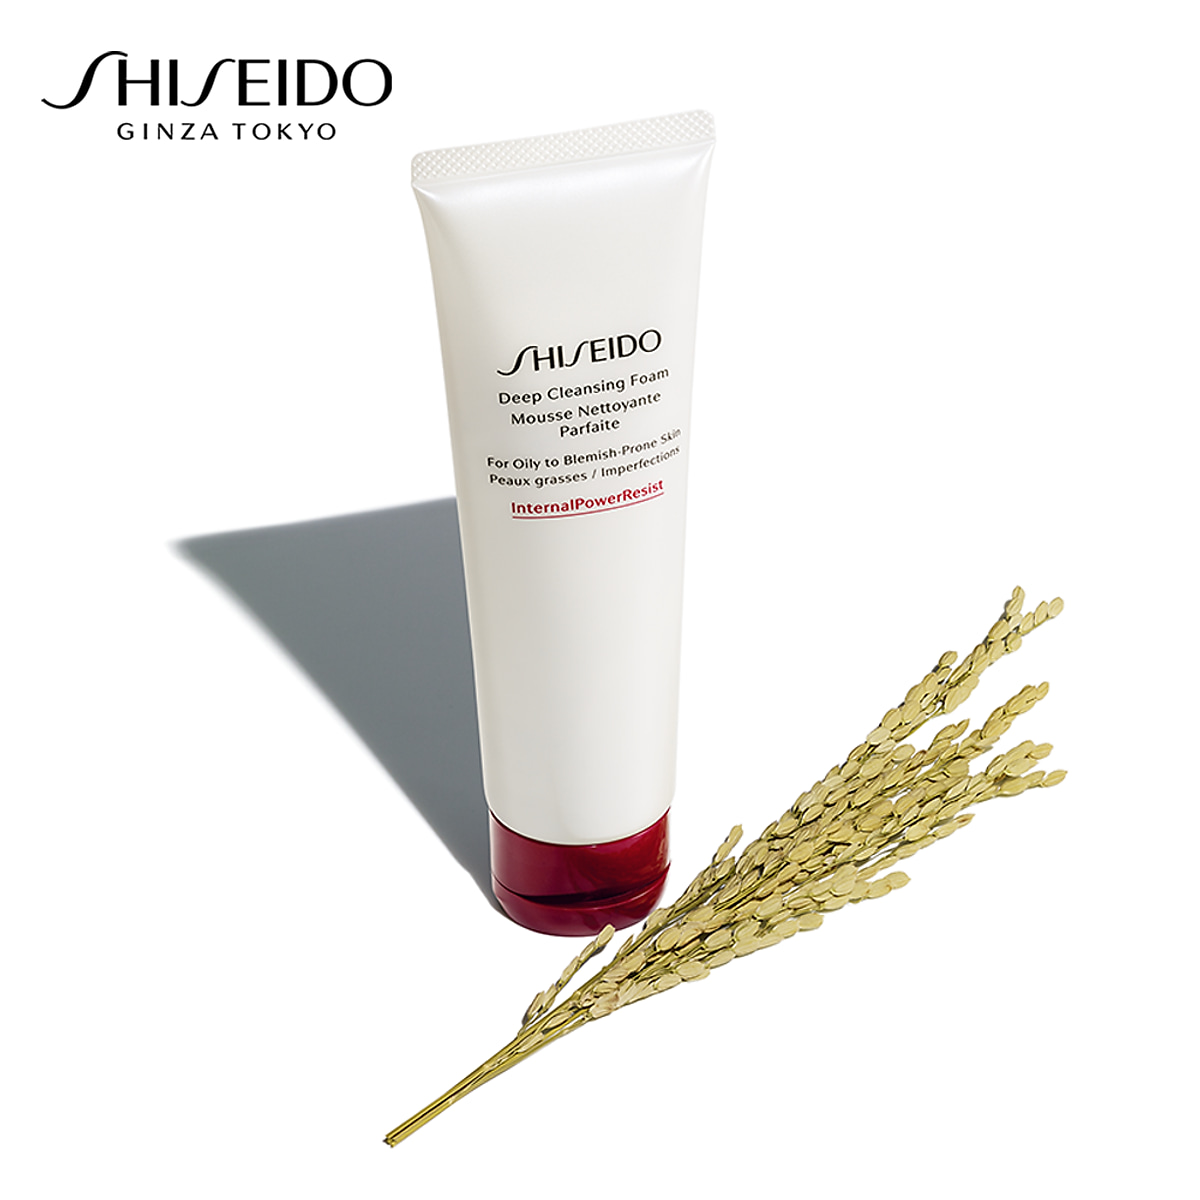 Đề xuất lựa chọn sữa rửa mặt phù hợp cho da thường sữa rửa mặt tạo bọt làm sạch sâu Shiseido Deep Cleansing Foam